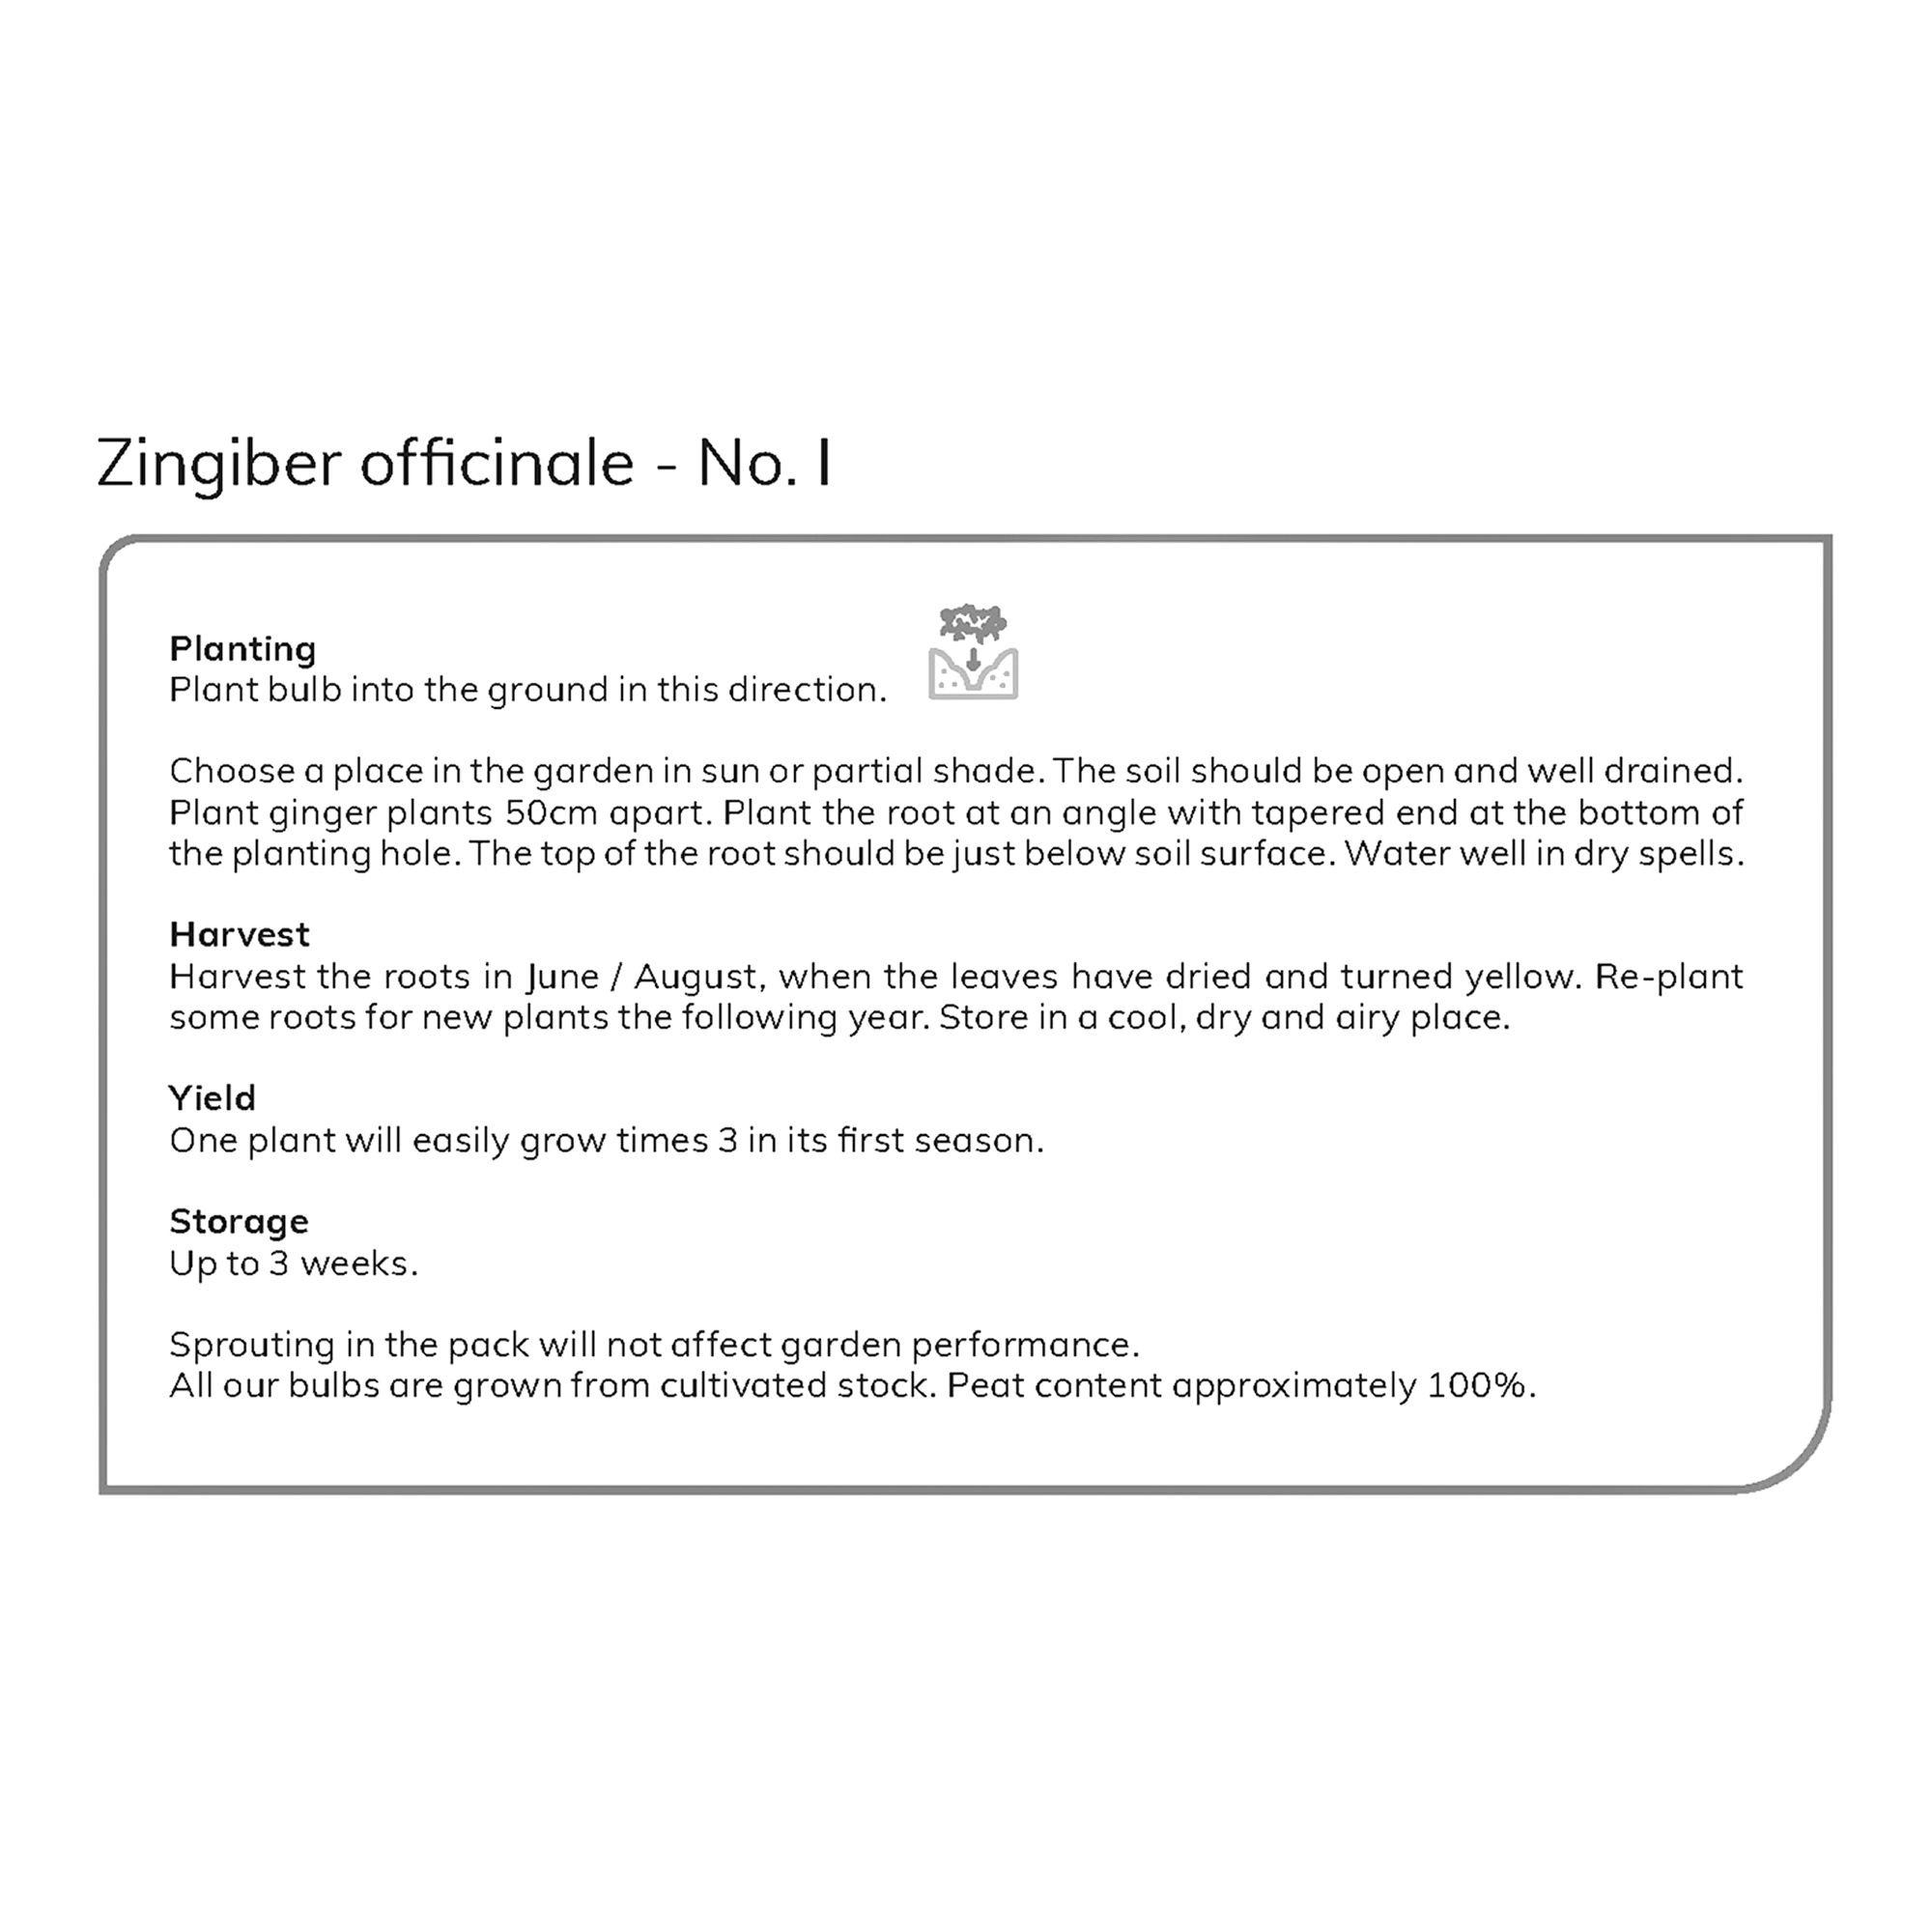 Zinibar Officinale Ginger Vegetable bulb